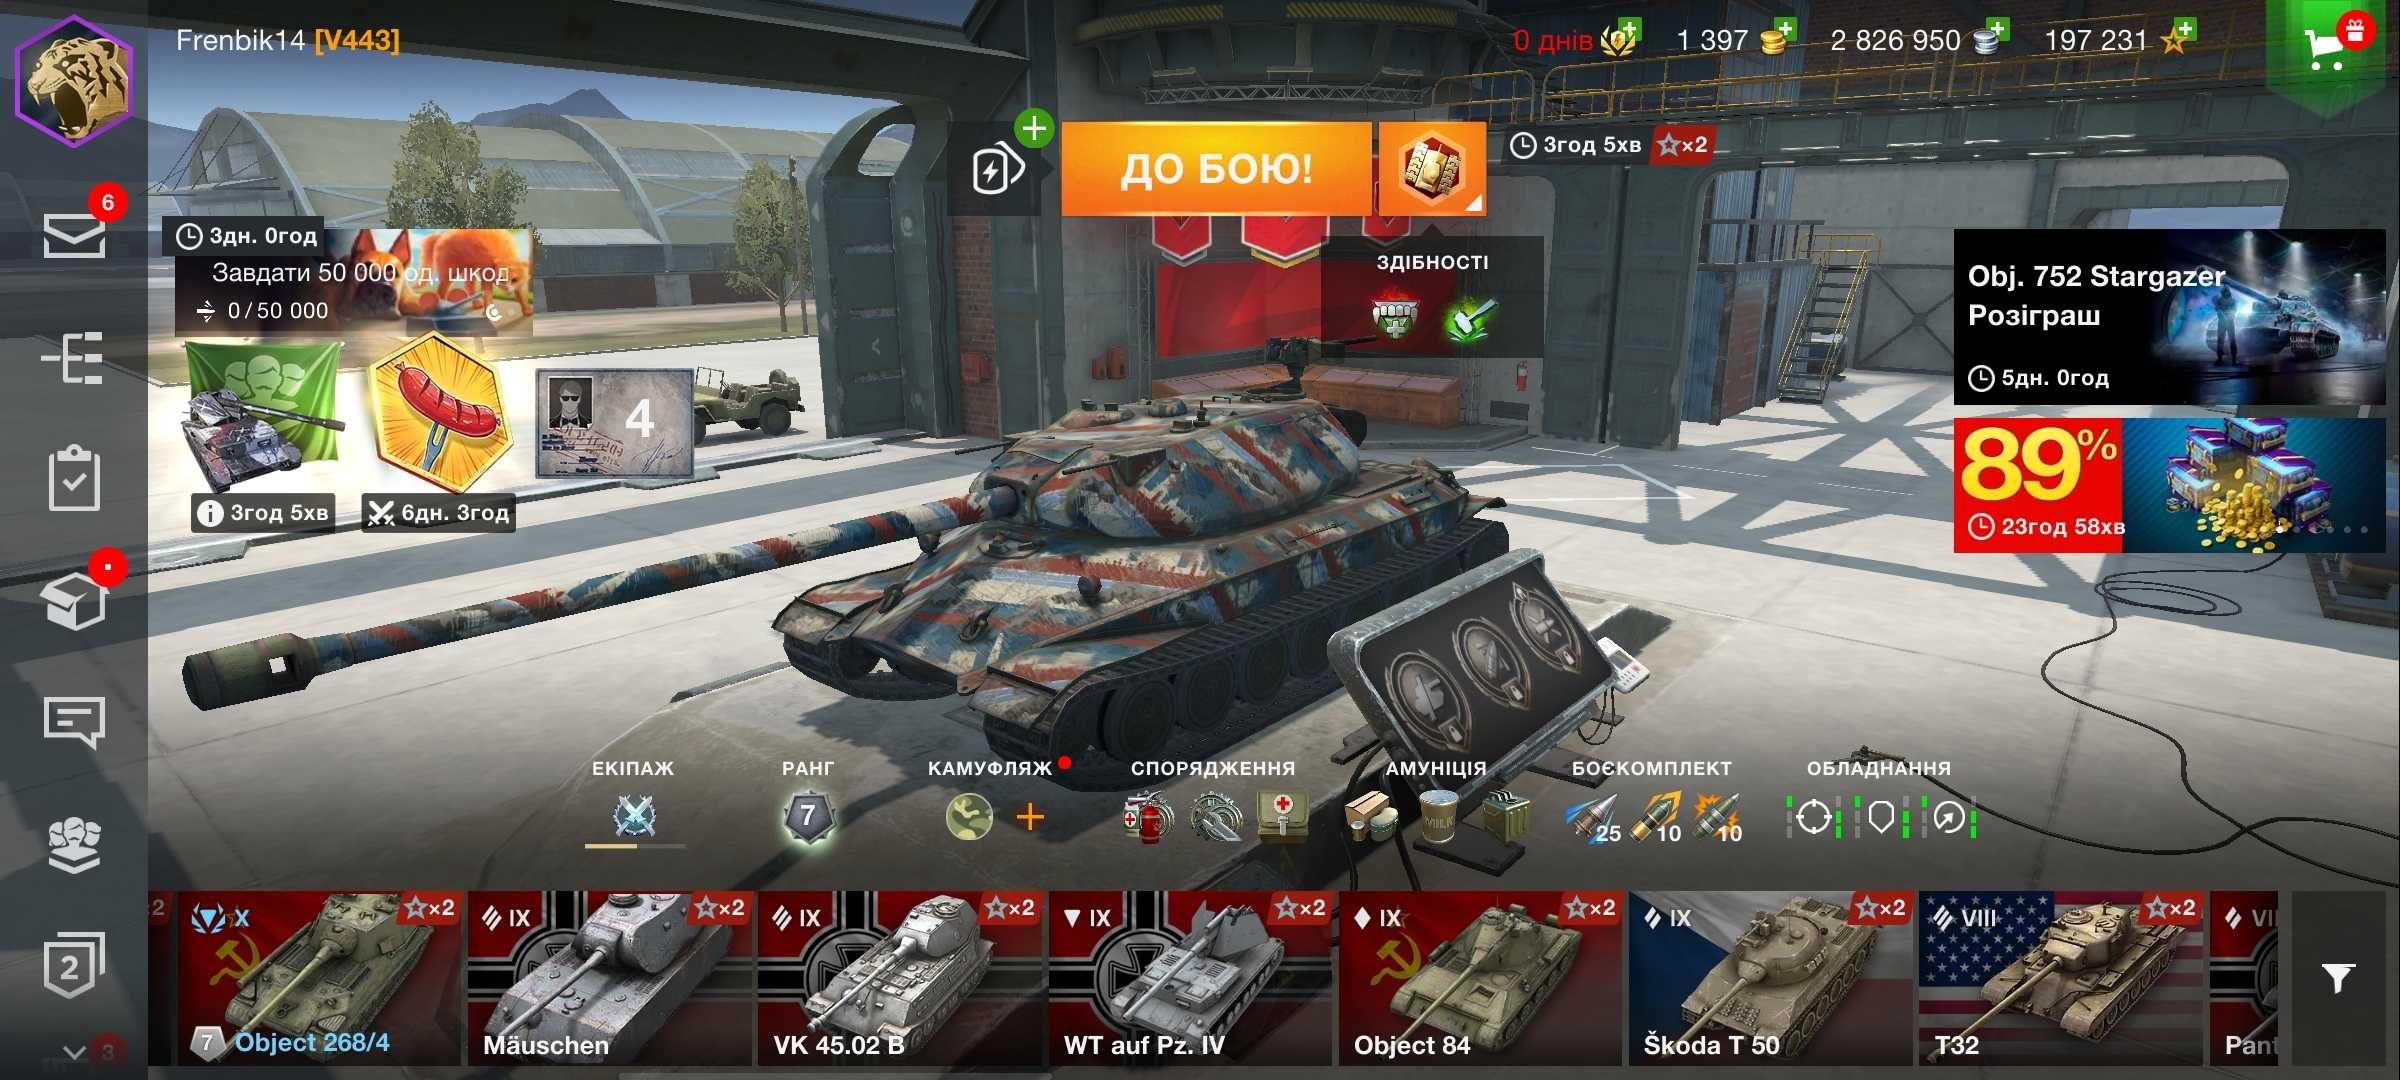 Аккаунт гри World of Tanks Blitz